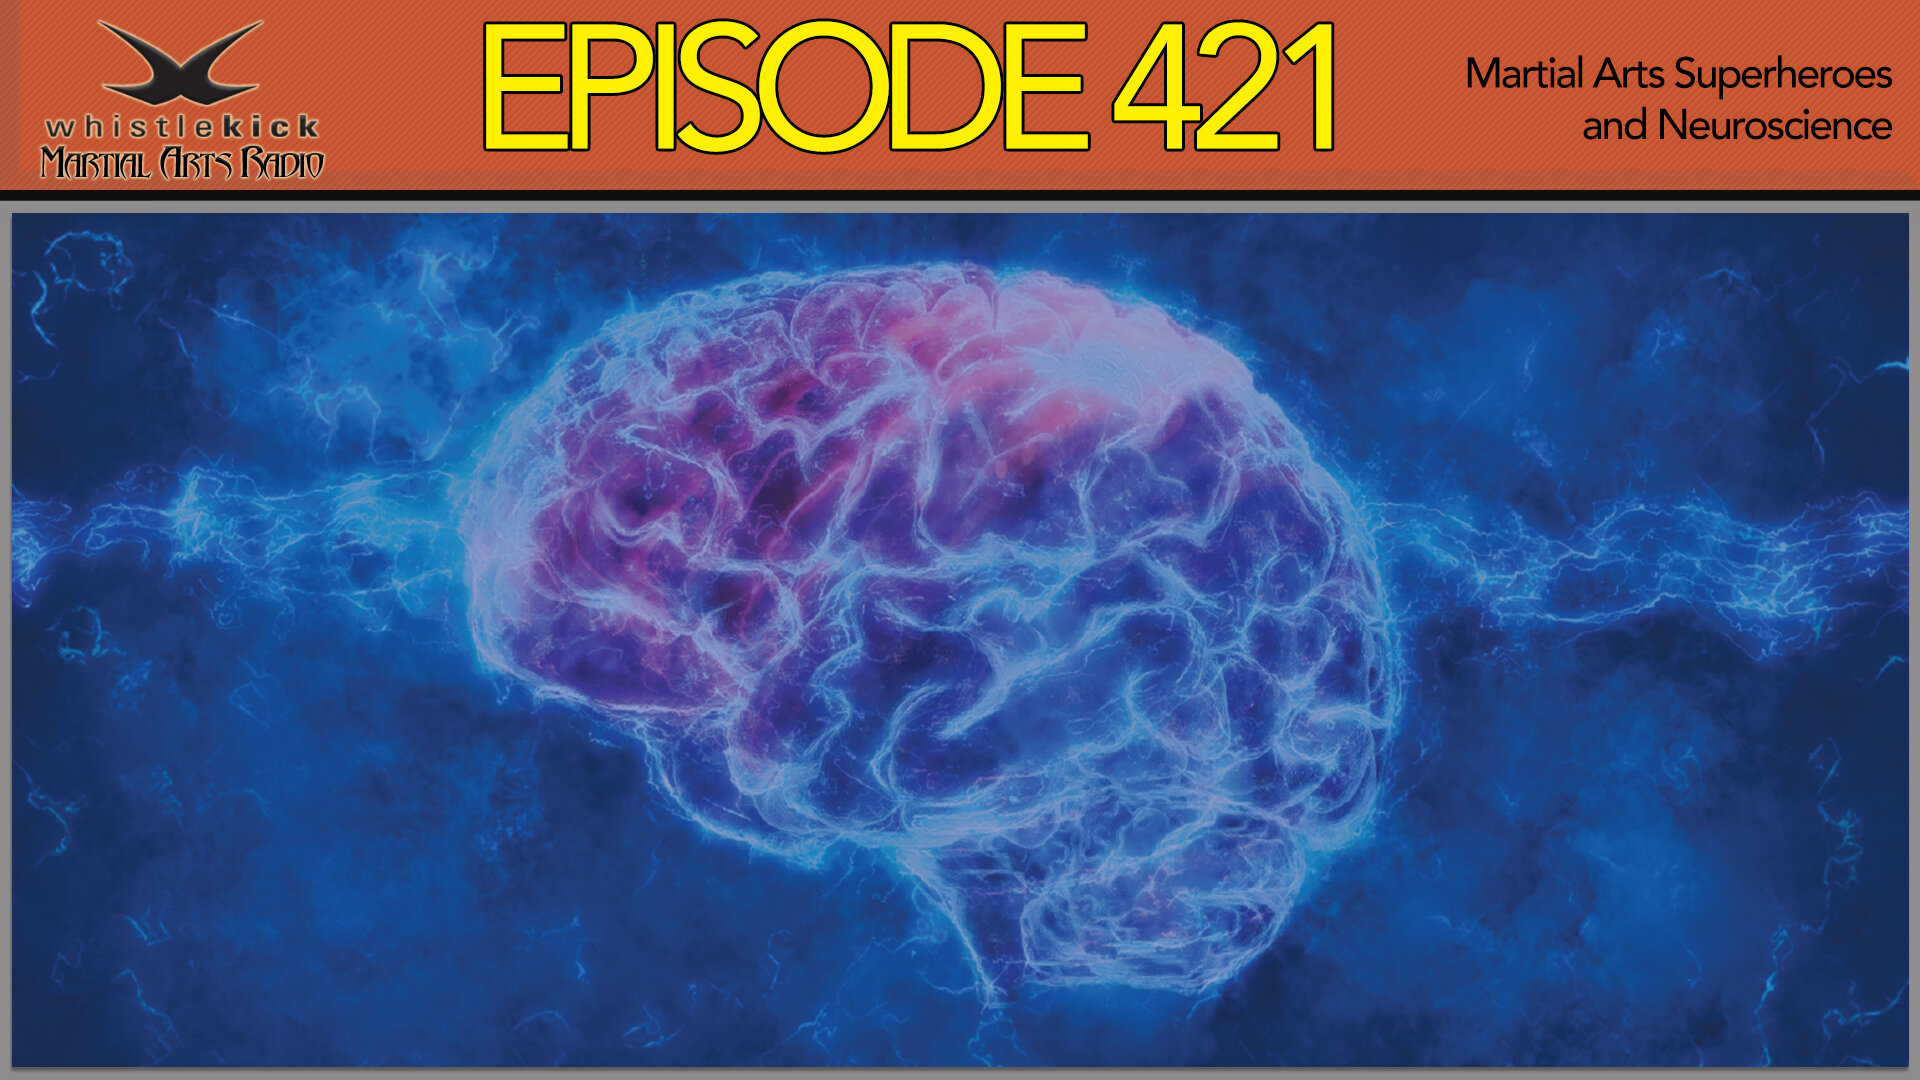 Geruïneerd Machtigen laat staan Episode 421 - Martial Arts Superheroes and Neuroscience — whistlekick  Martial Arts Radio